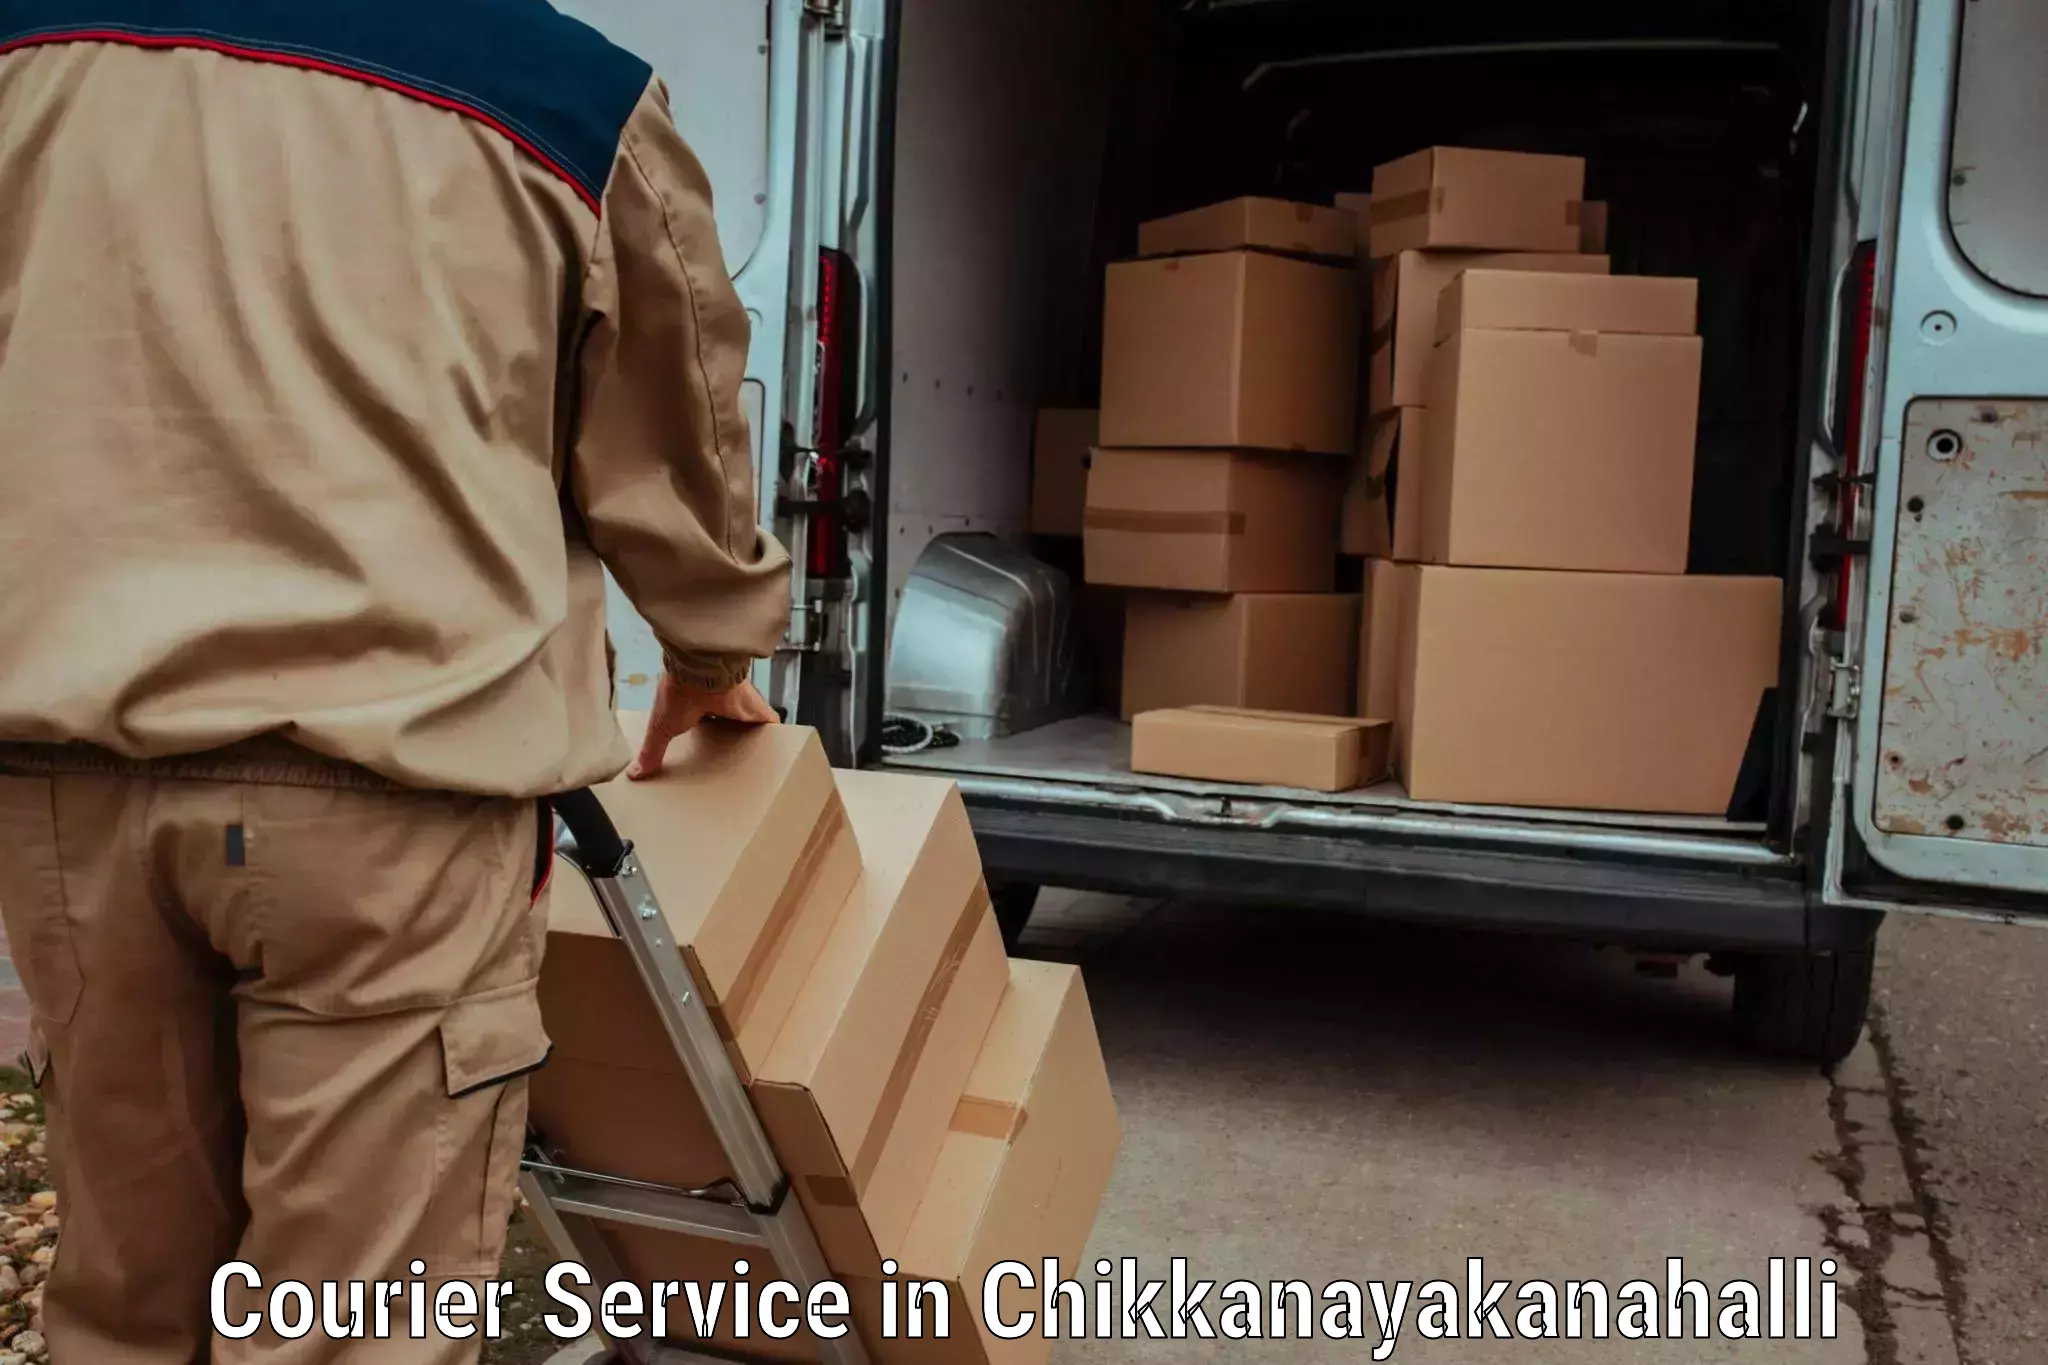 Online courier booking in Chikkanayakanahalli